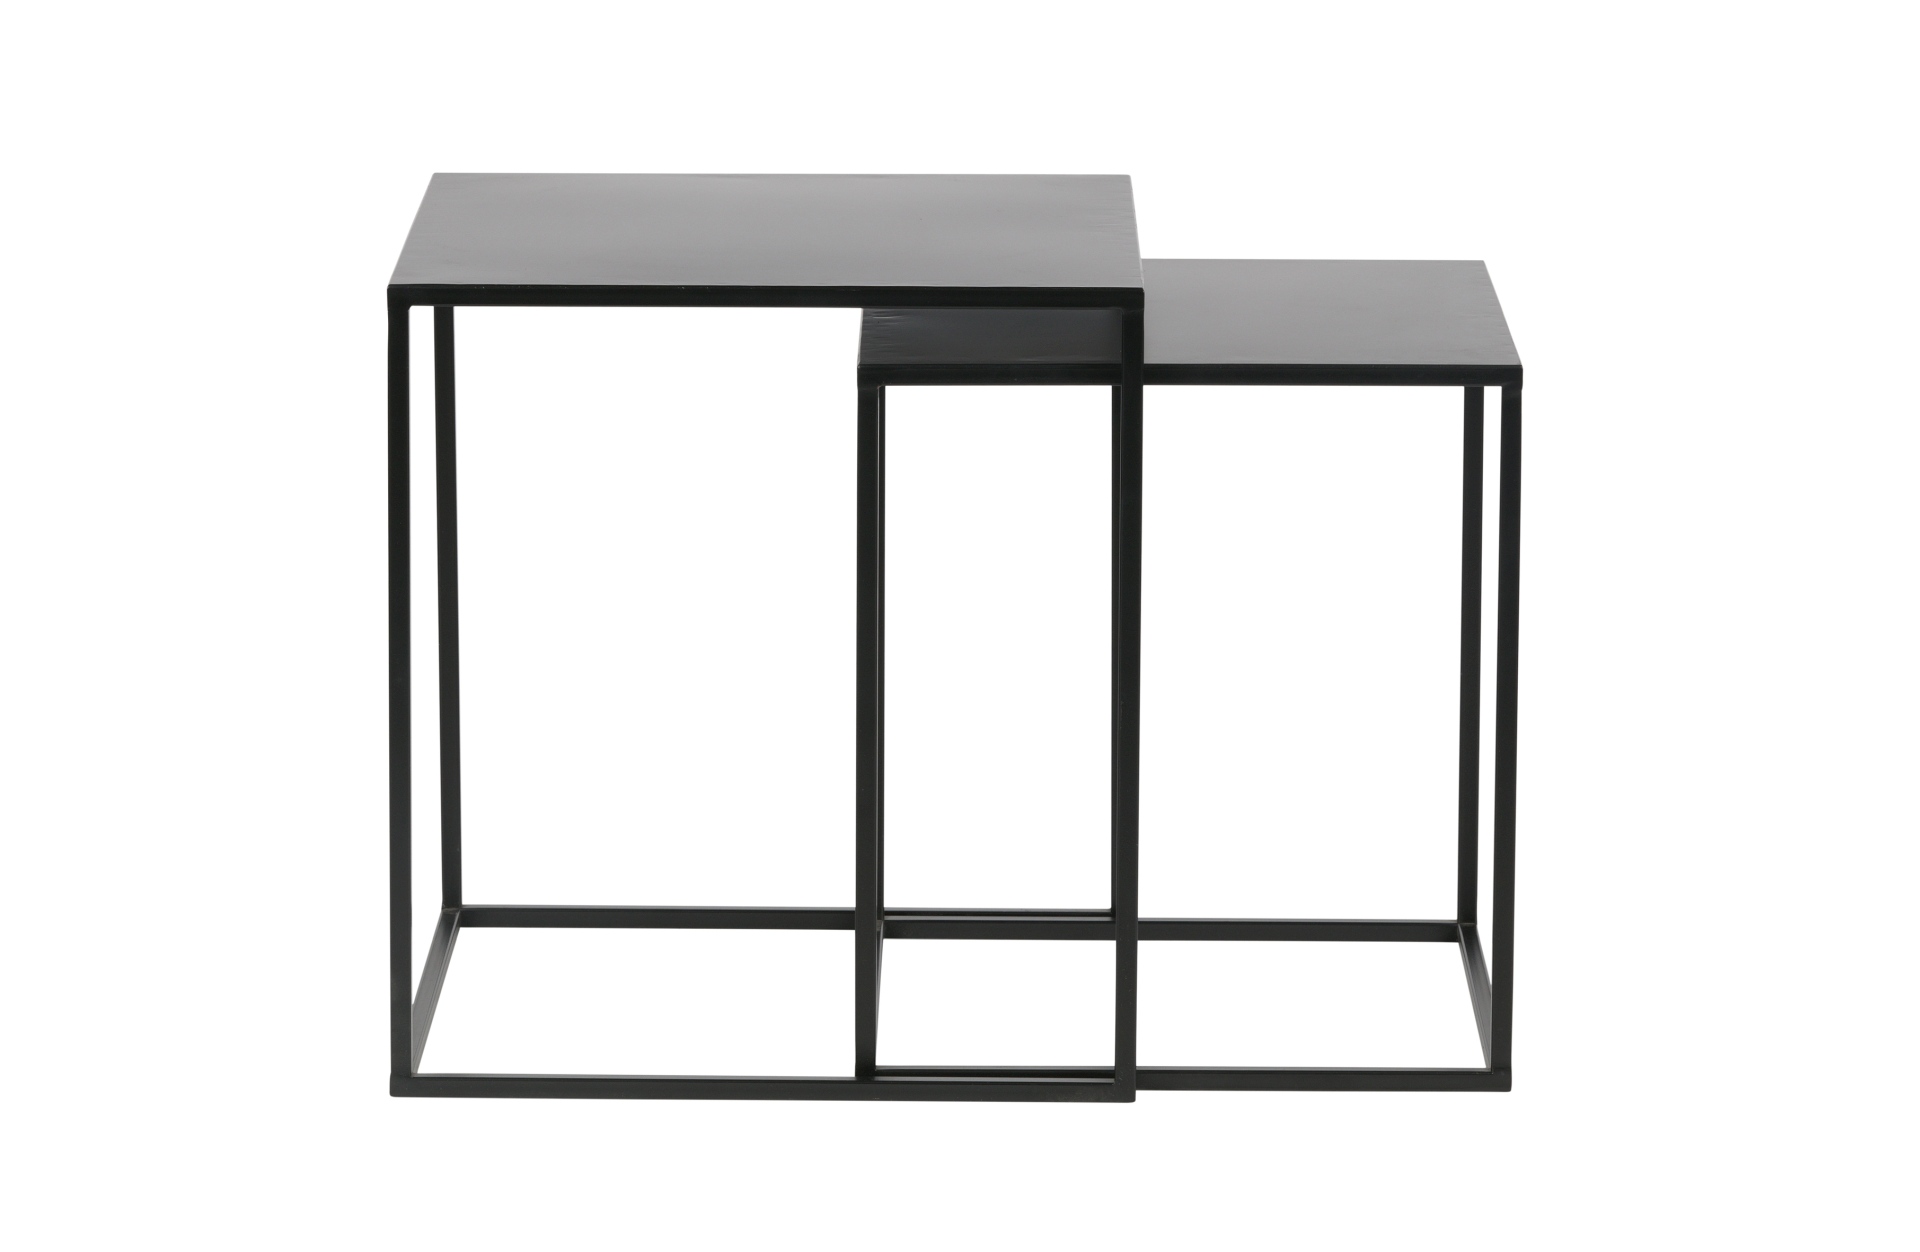 Der Beistelltisch Ziva wurde aus Metall gefertigt, welches einen schwarzen Farbton besitzt. Der Tisch ist als 2er-Set verfügbar und hat ein modernes Design.